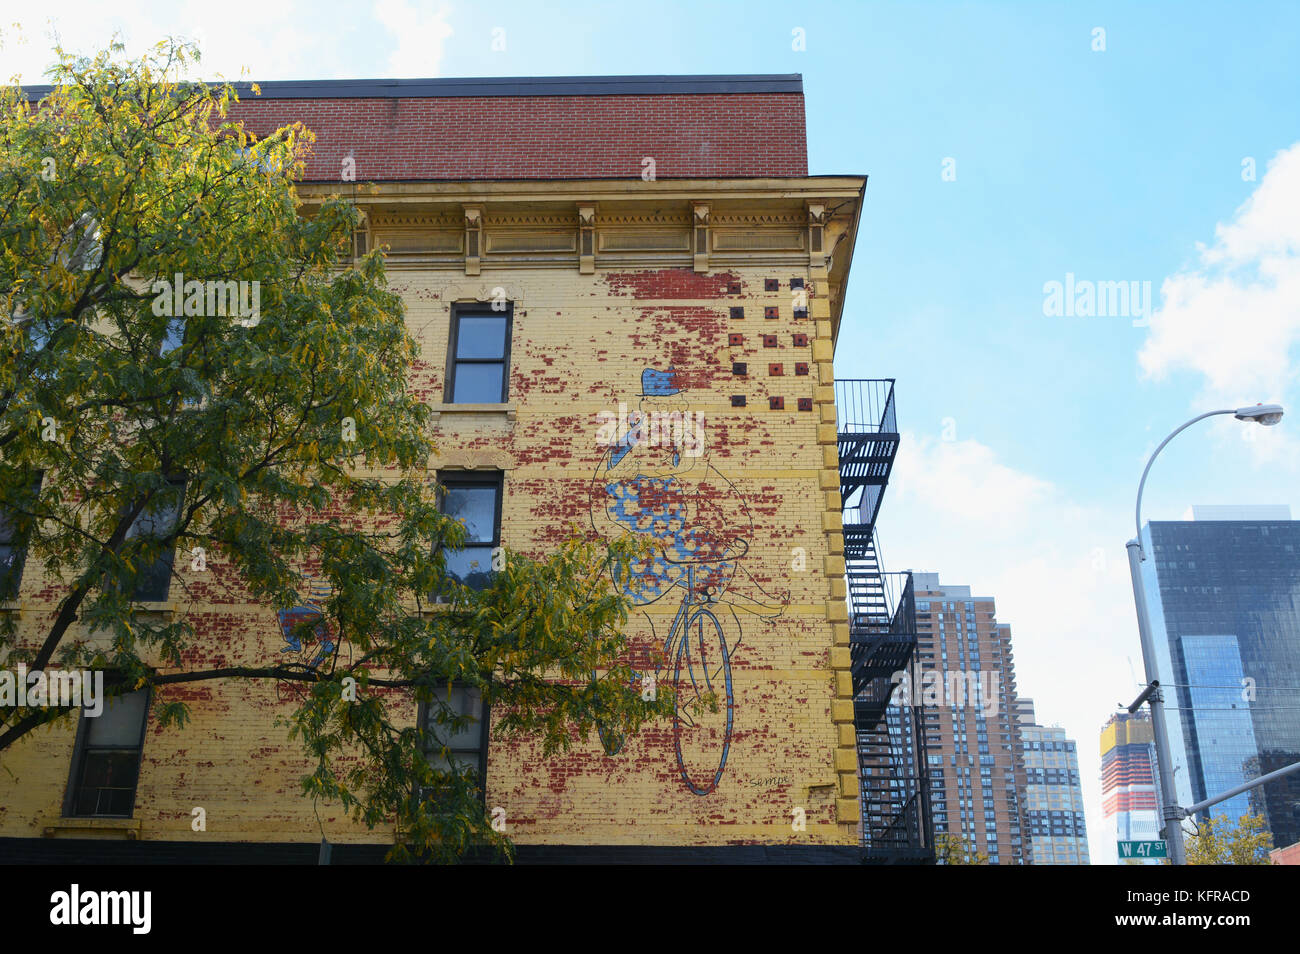 NEW YORK - 23. OKTOBER 2017: Mauer von Kiehl's Gebäude an der Ecke West 37th Street und 9th Avenue, mit Peeling gelbe Farbe und verwitterten Wandbild Stockfoto